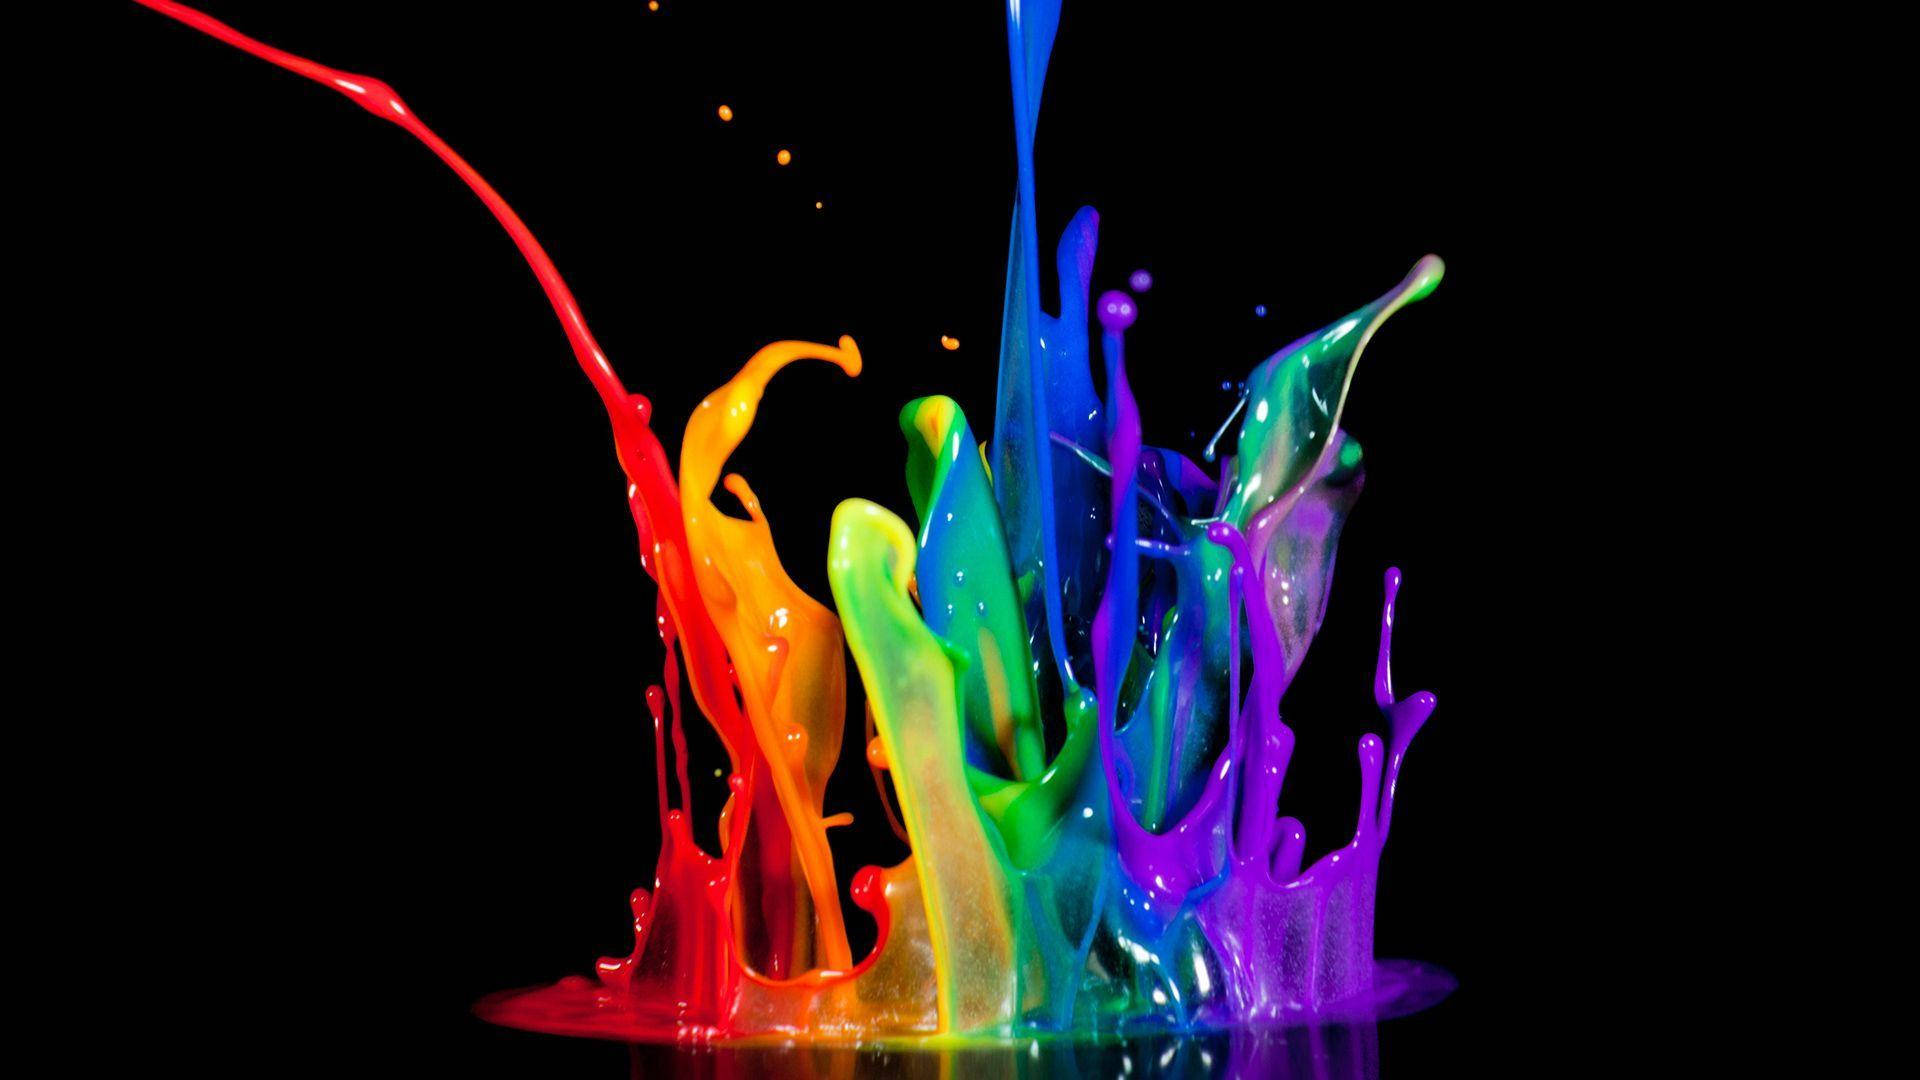 En farverig samling af malingstæpper, der fremkalder følelser af æstetisk skønhed. Wallpaper